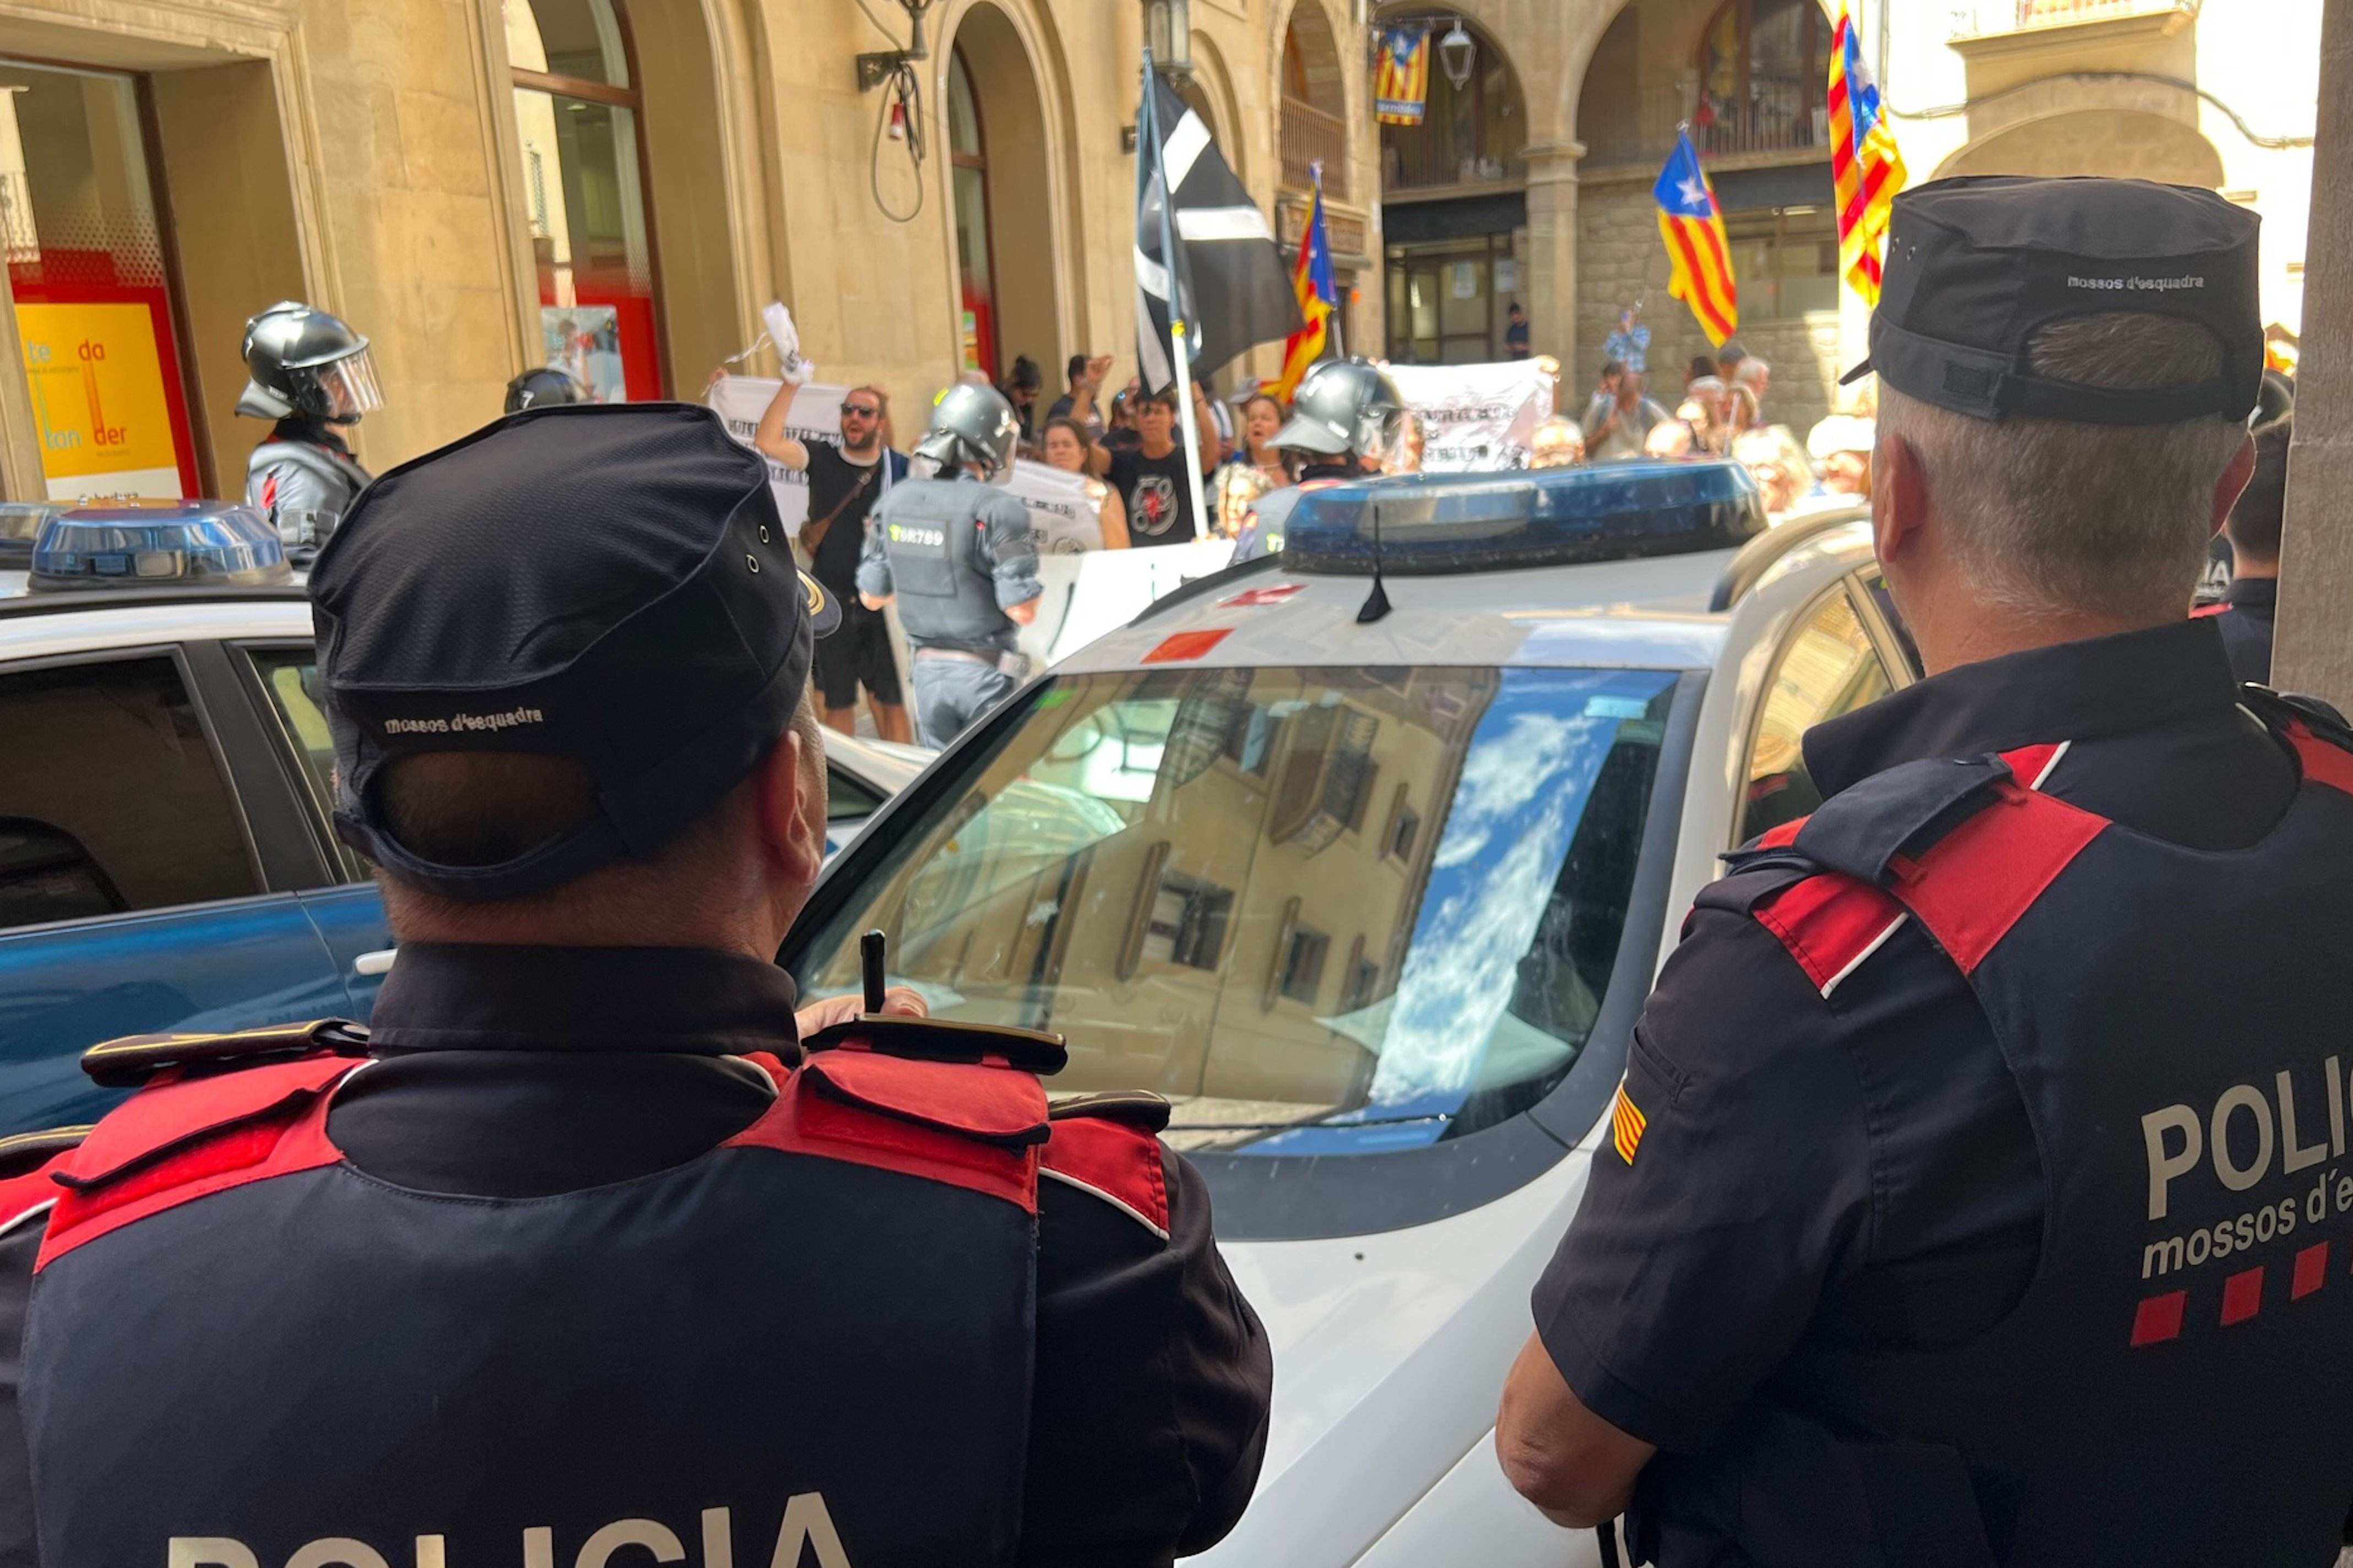 L'Audiència Nacional arxiva la causa per terrorisme per l'intent de boicot a La Vuelta